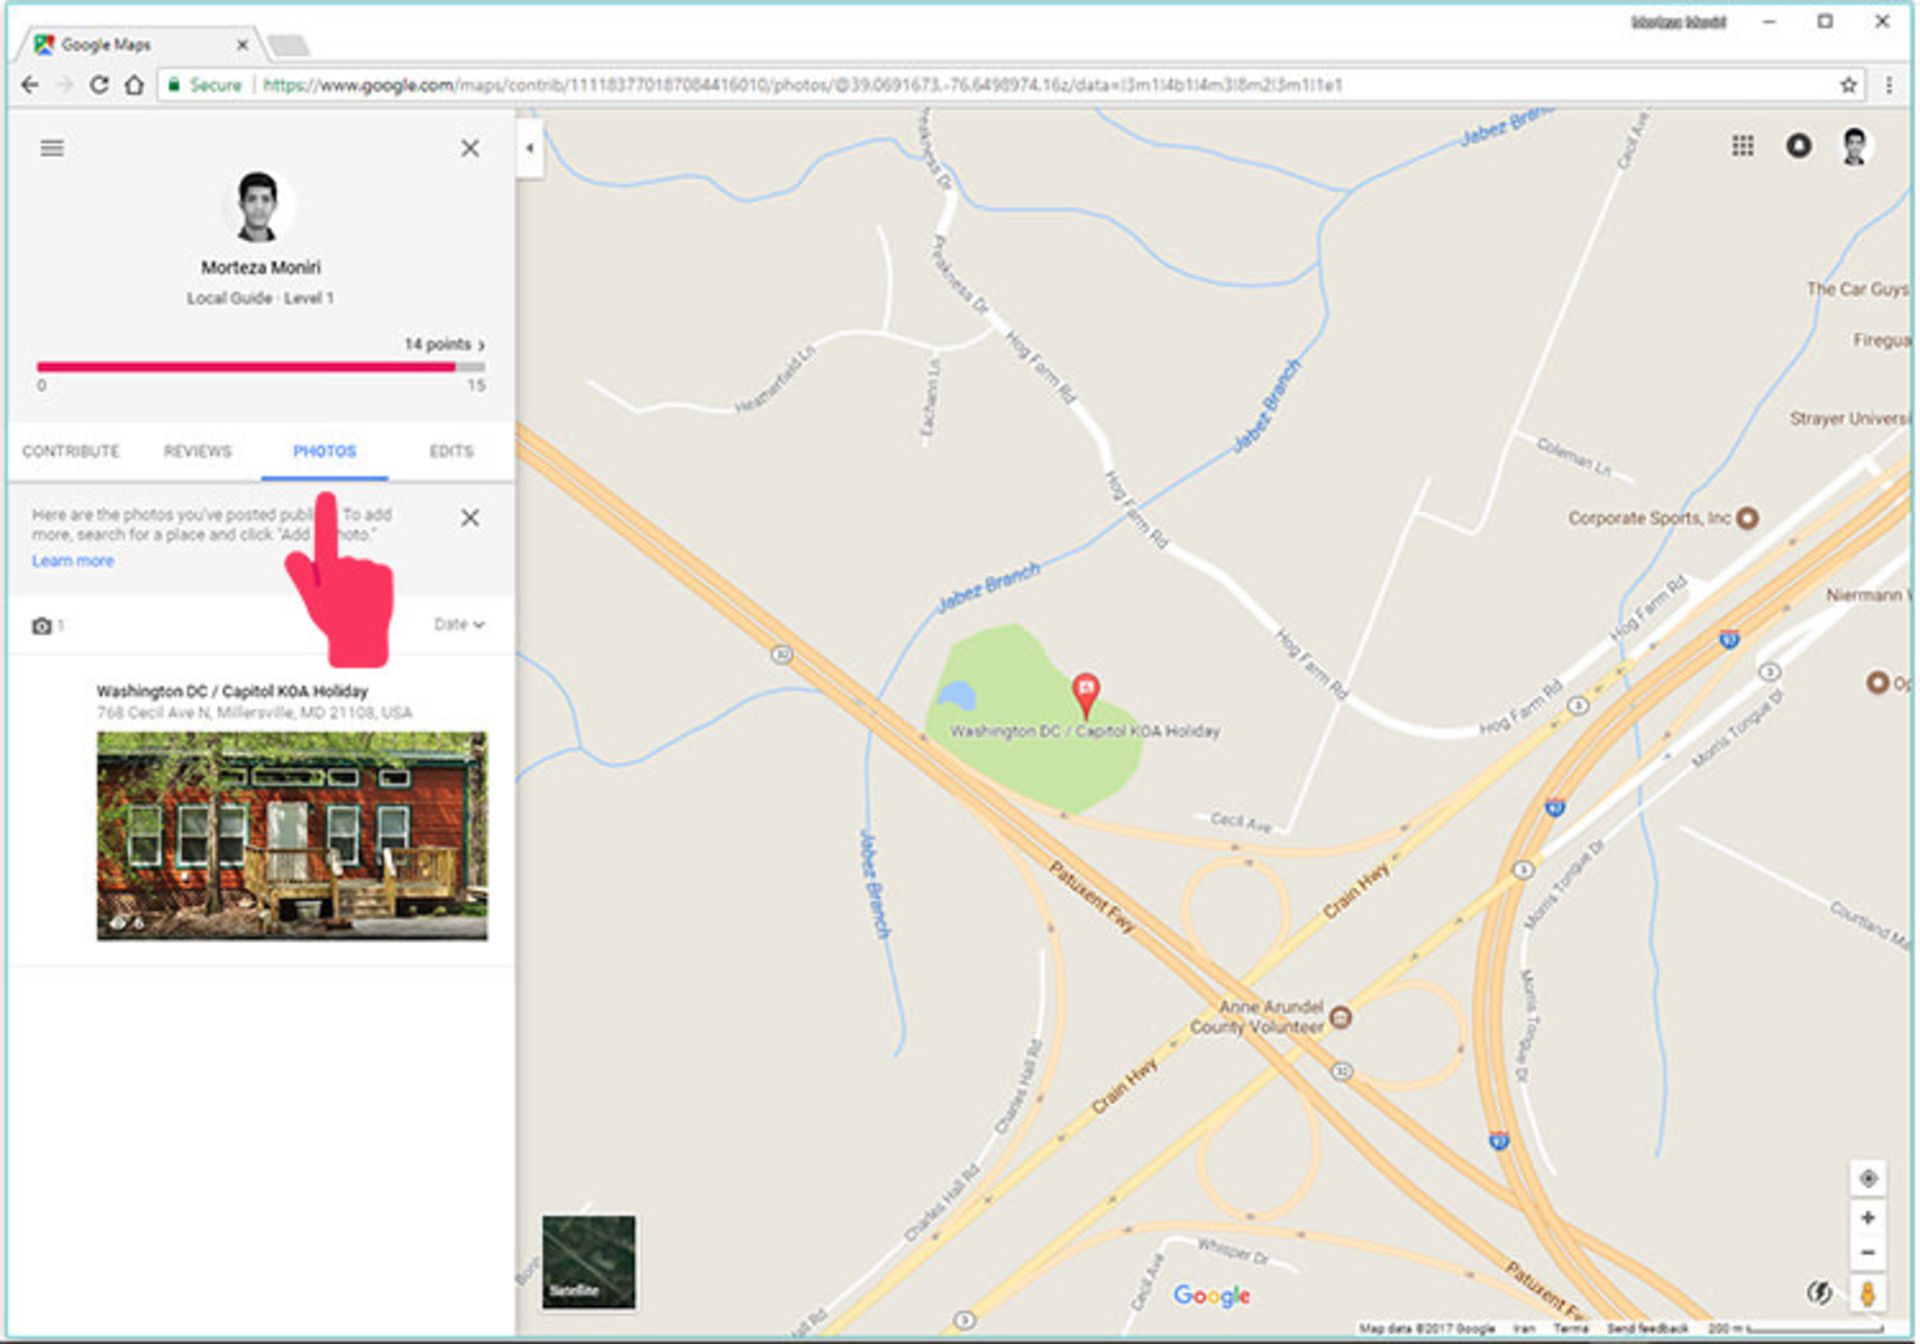 آموزش نقشه گوگل/Google maps